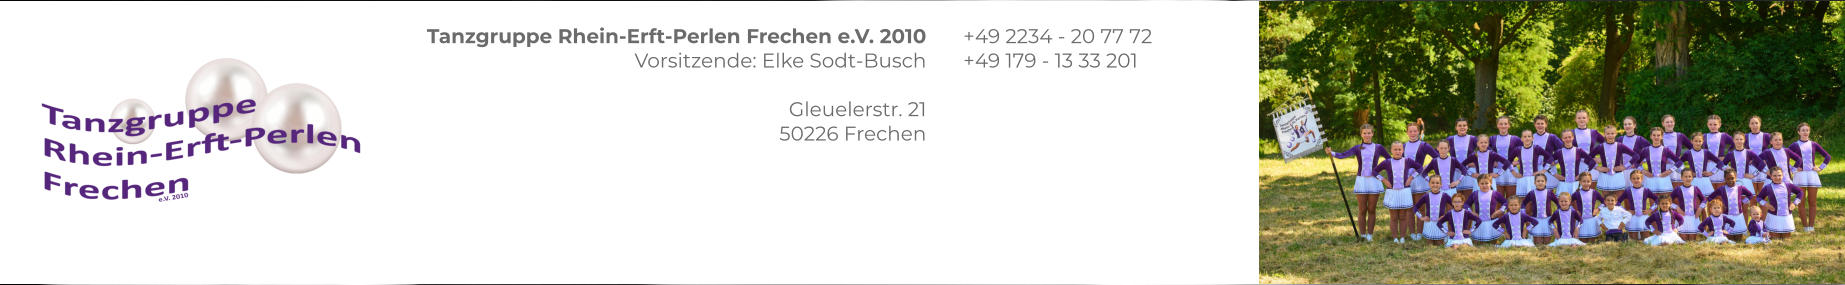 Tanzgruppe Rhein-Erft-Perlen Frechen e.V. 2010 Vorsitzende: Elke Sodt-Busch  Gleuelerstr. 21 50226 Frechen +49 2234 - 20 77 72 +49 179 - 13 33 201